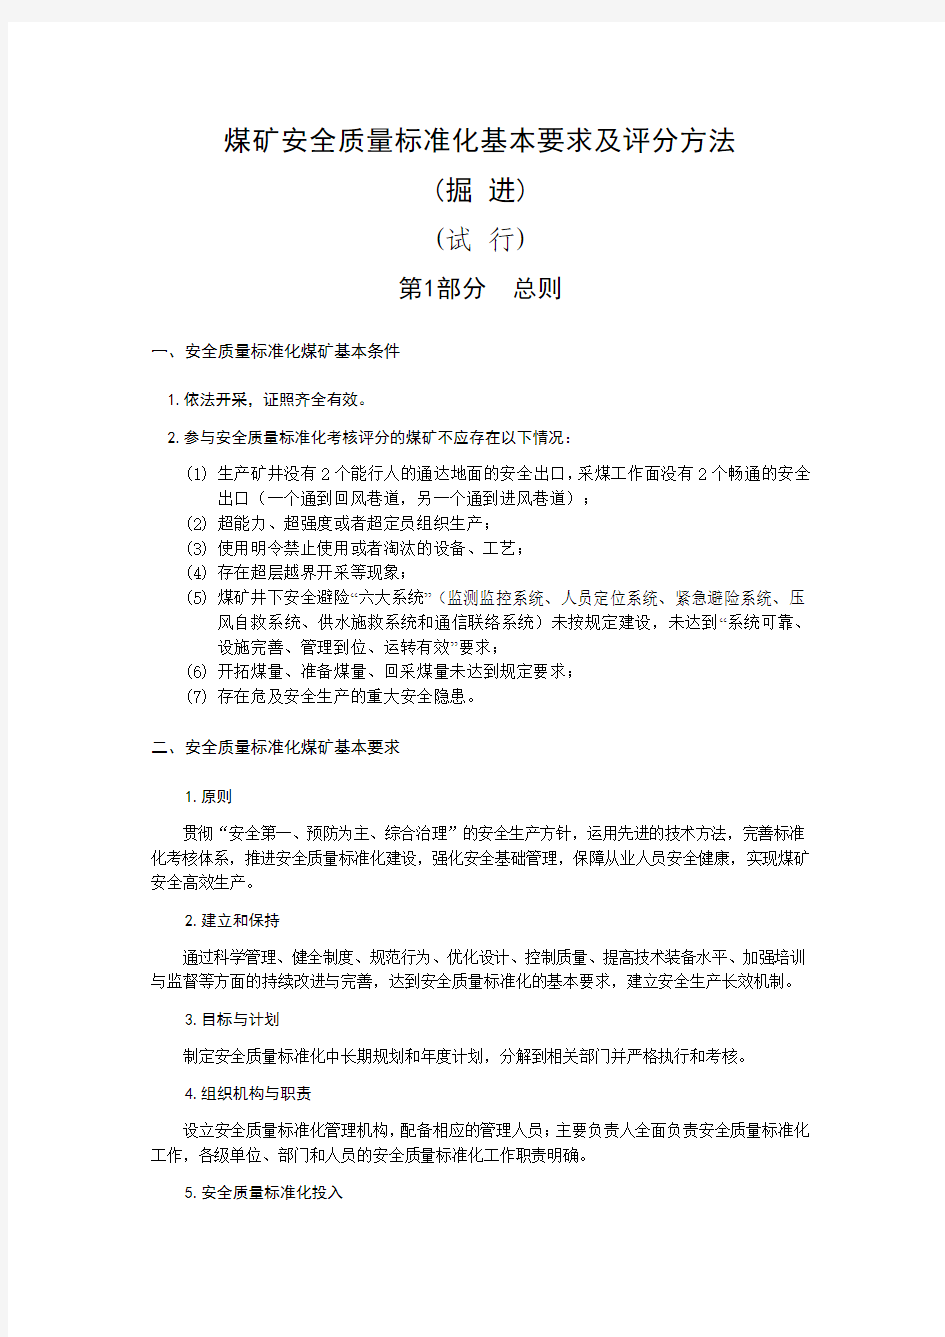 掘进 晋煤安发[2013]500号山西省井工煤矿安全质量标准化基本要求及评分方法